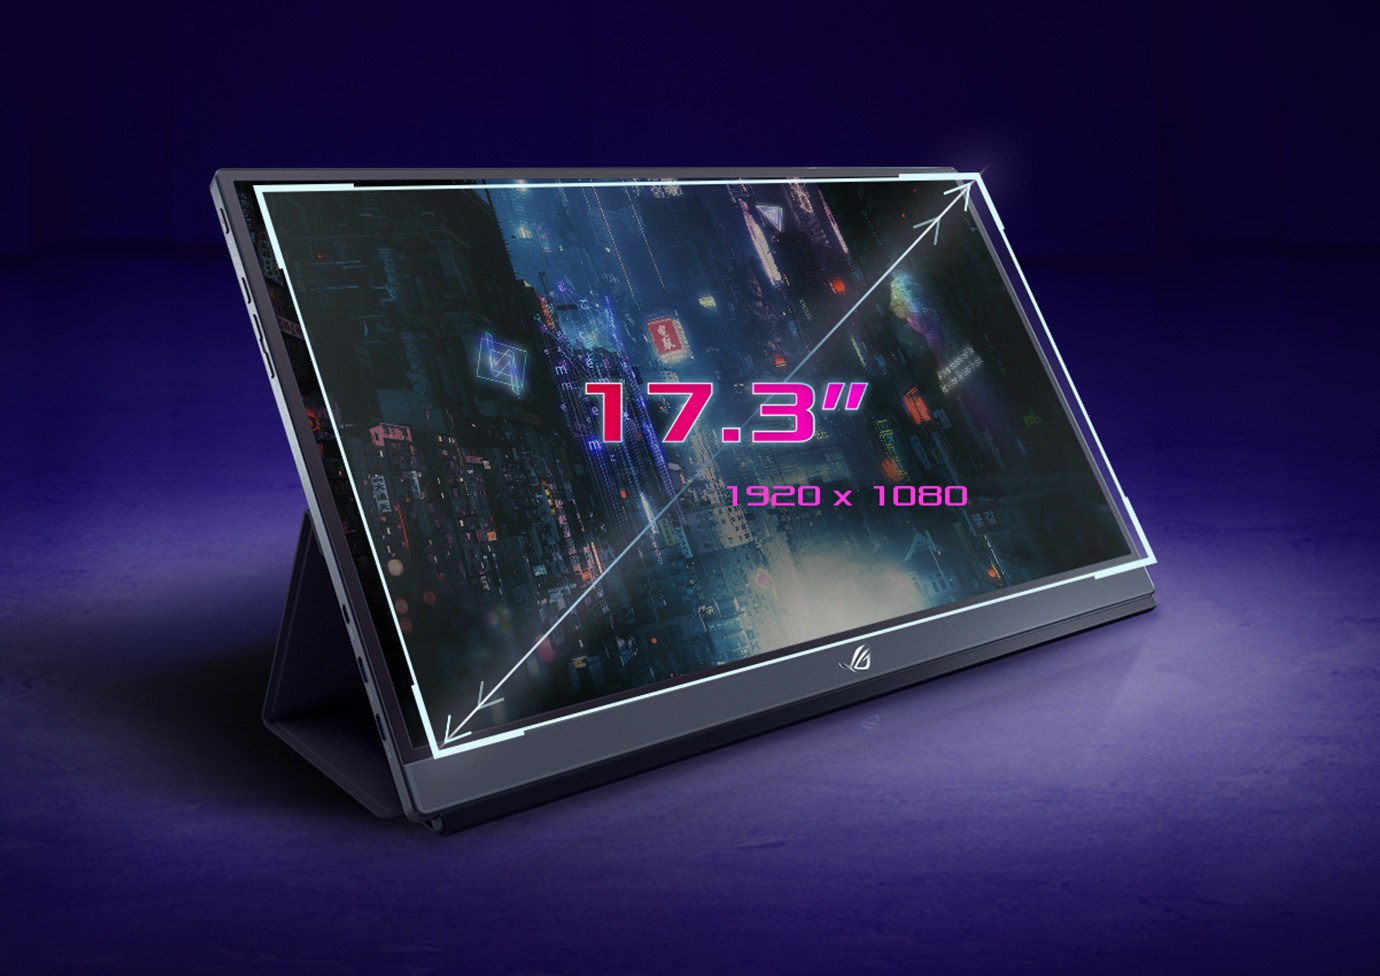 ASUS presenta ZenScreen, nueva pantalla portátil con USB Type-C